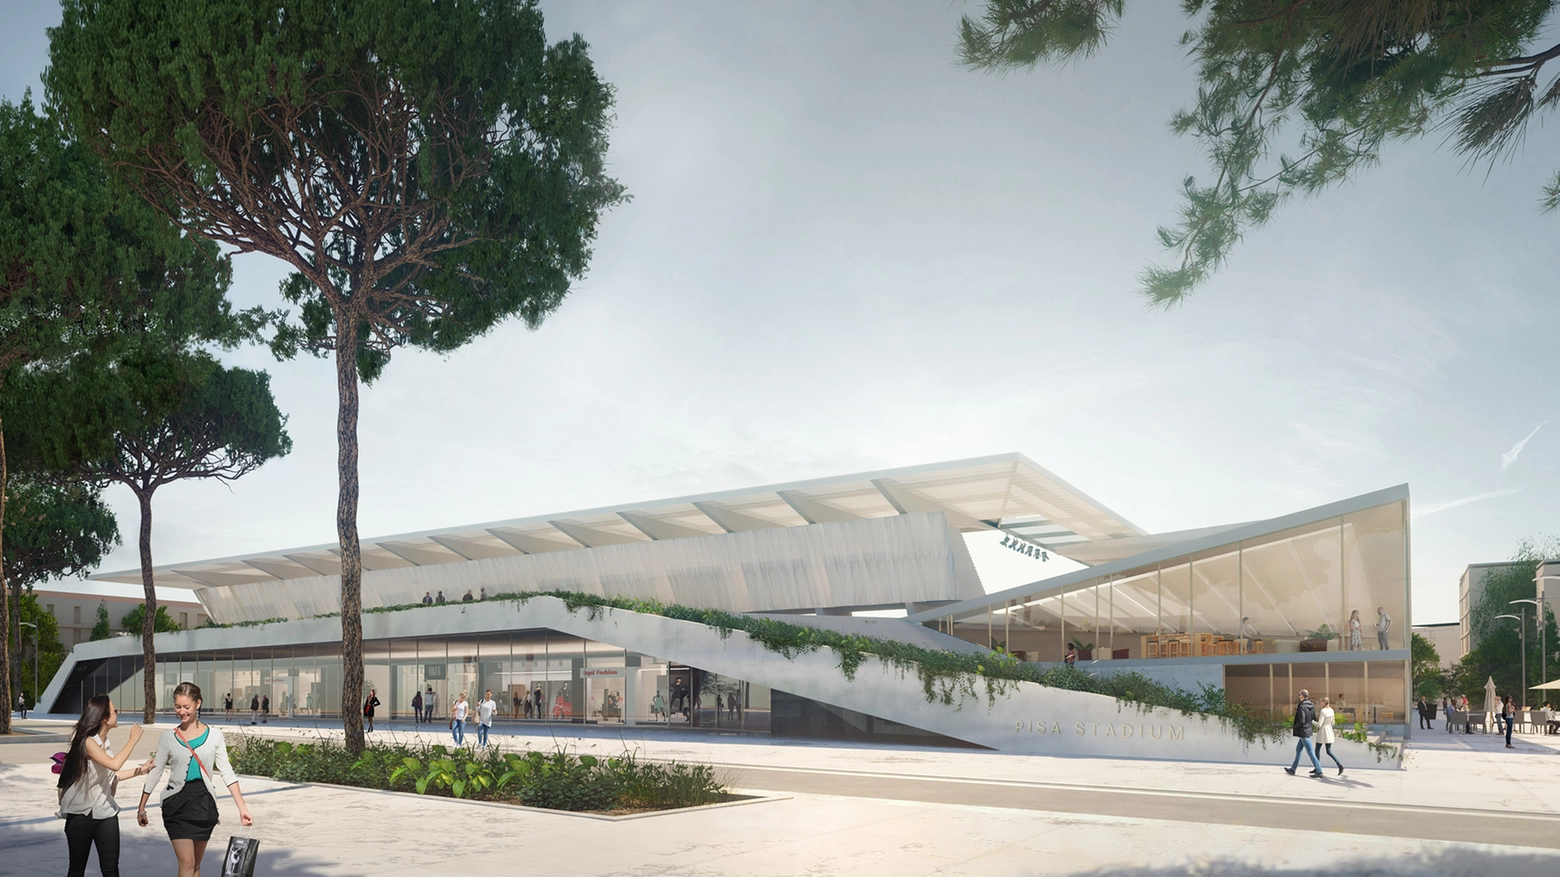 La nuova Arena nel progetto dello studio Iotti-Pavarani